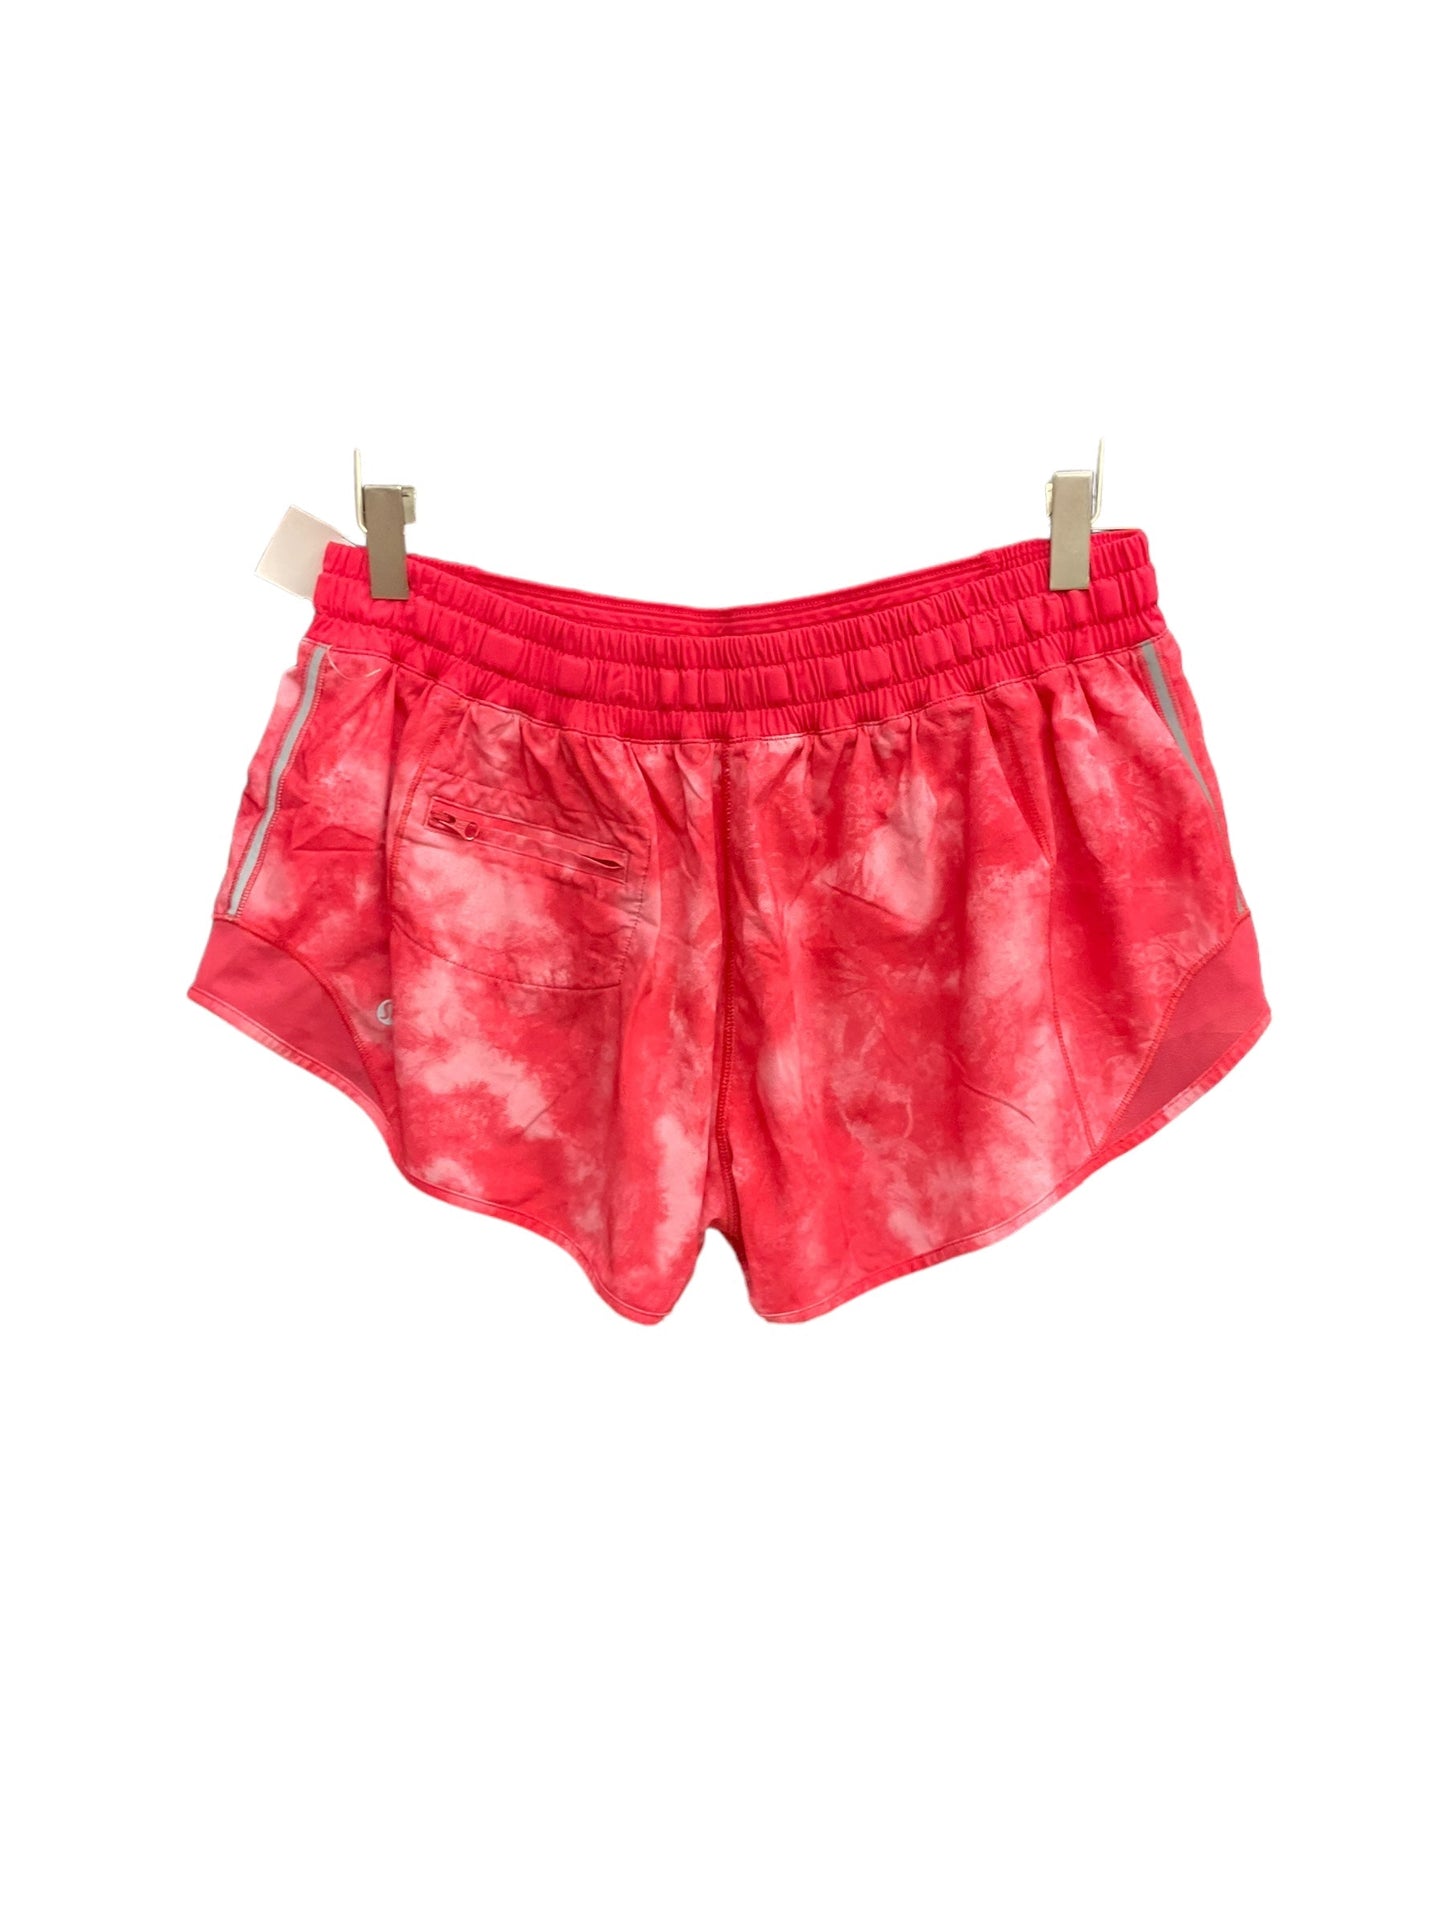 Pink Athletic Shorts Lululemon, Size Xl